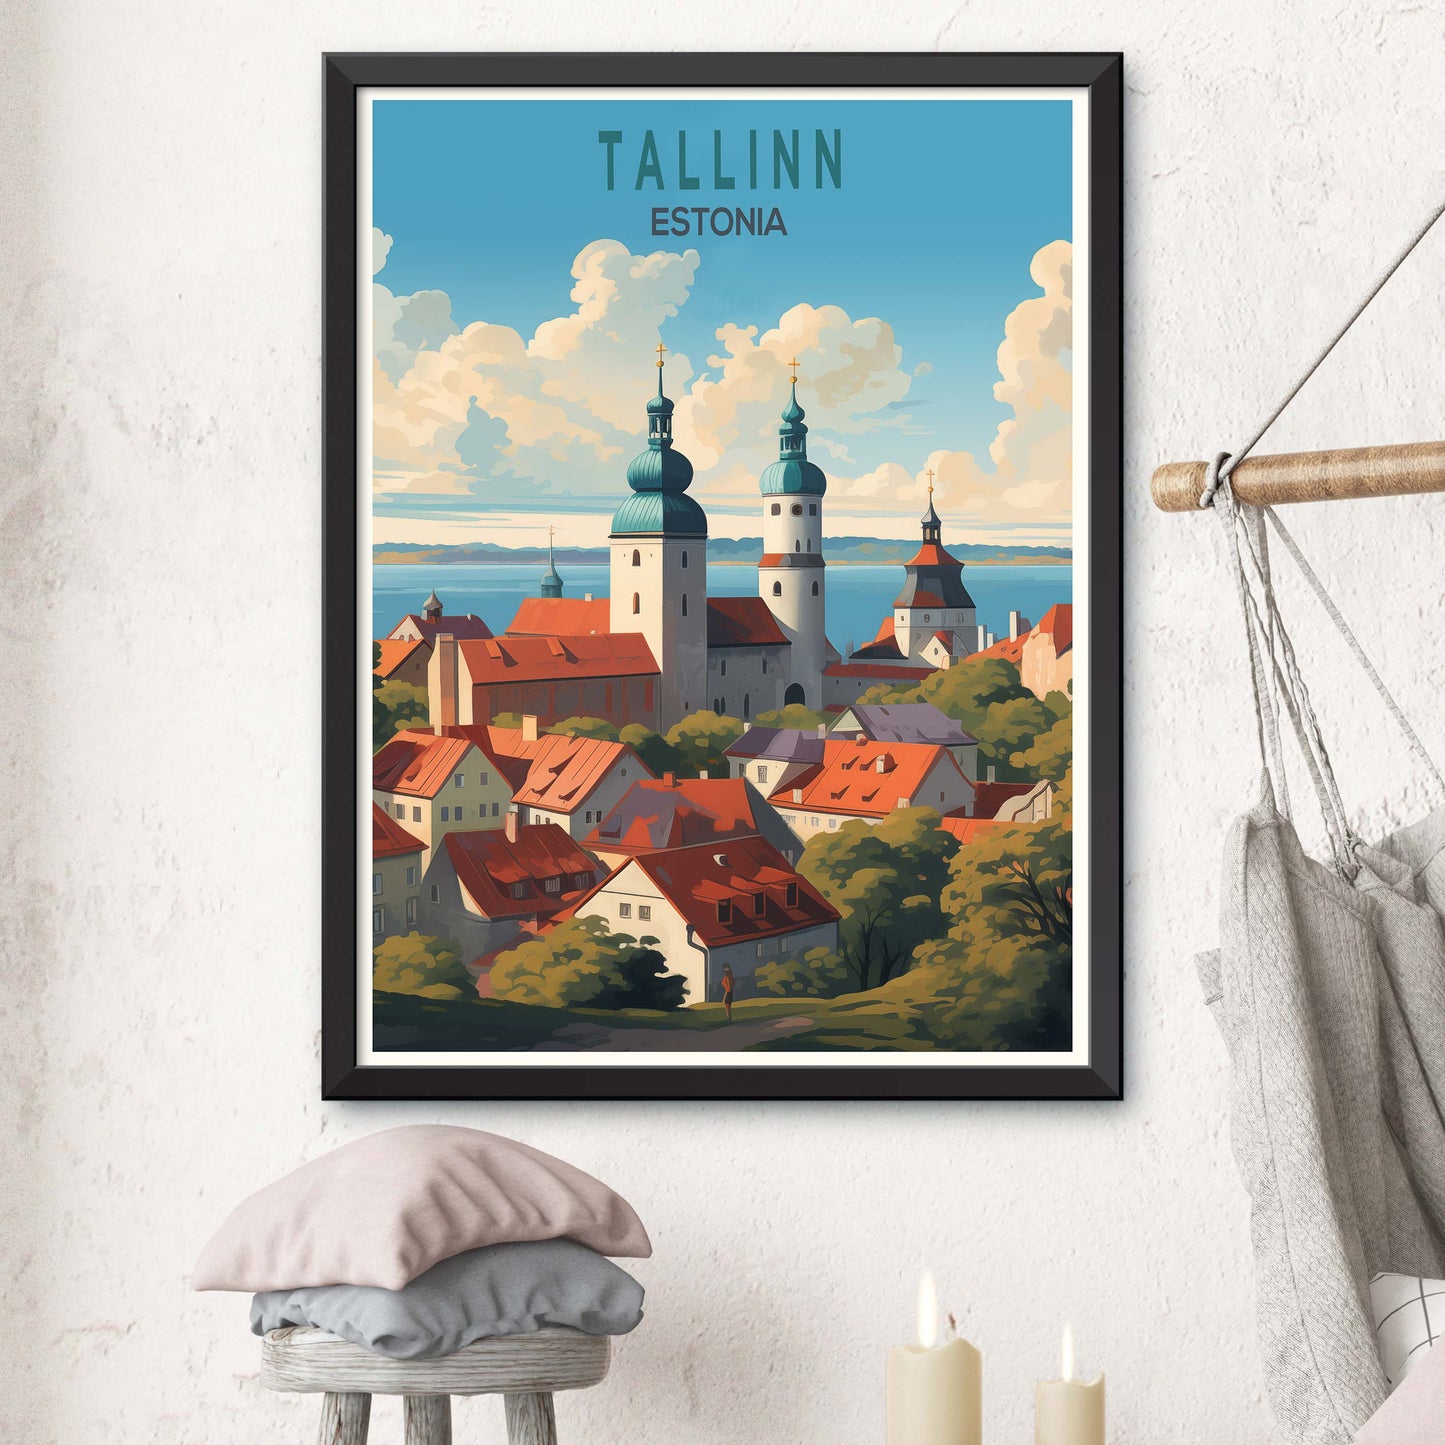 Tallinn Estonia Travel Poster Wall Art, Tallinn Estonia Travel Poster